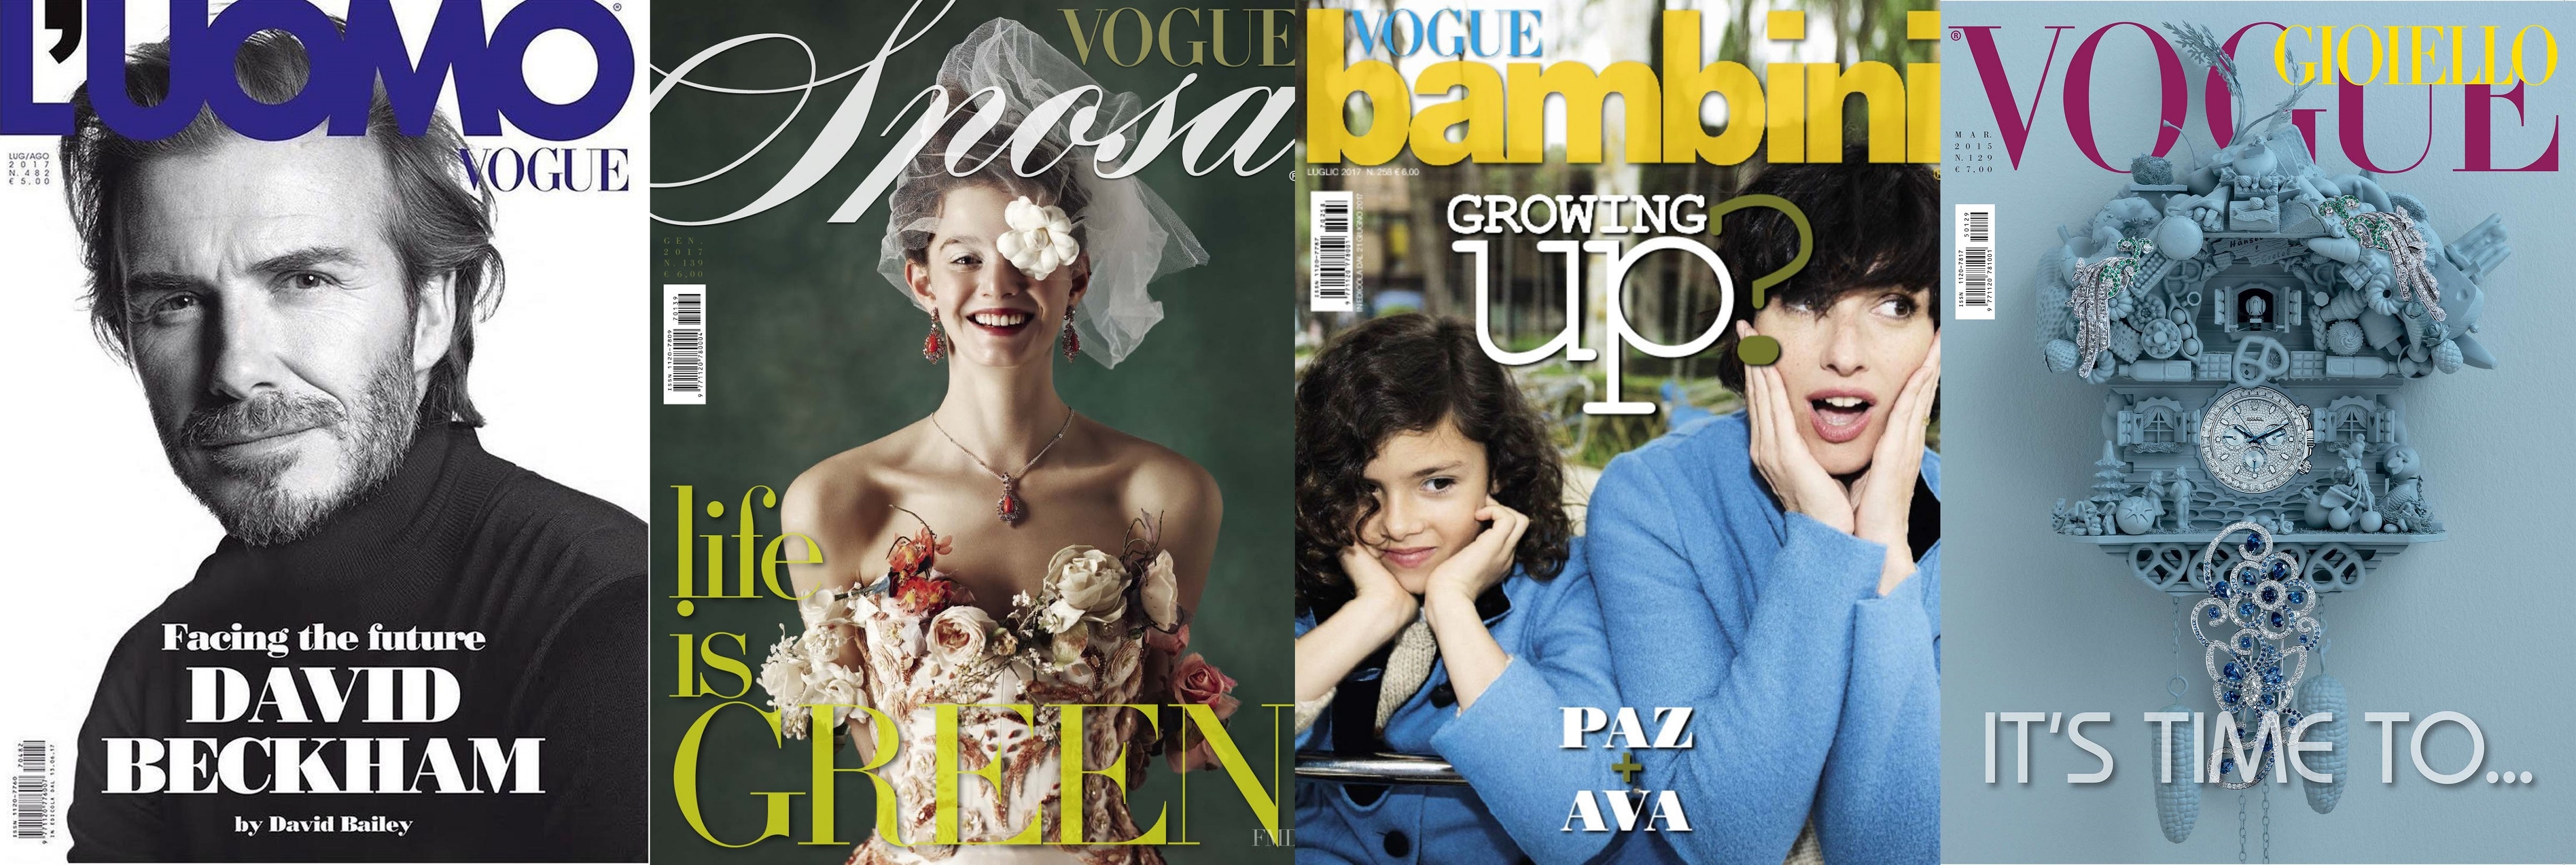 意大利版Vogue一次停刊四本雜誌